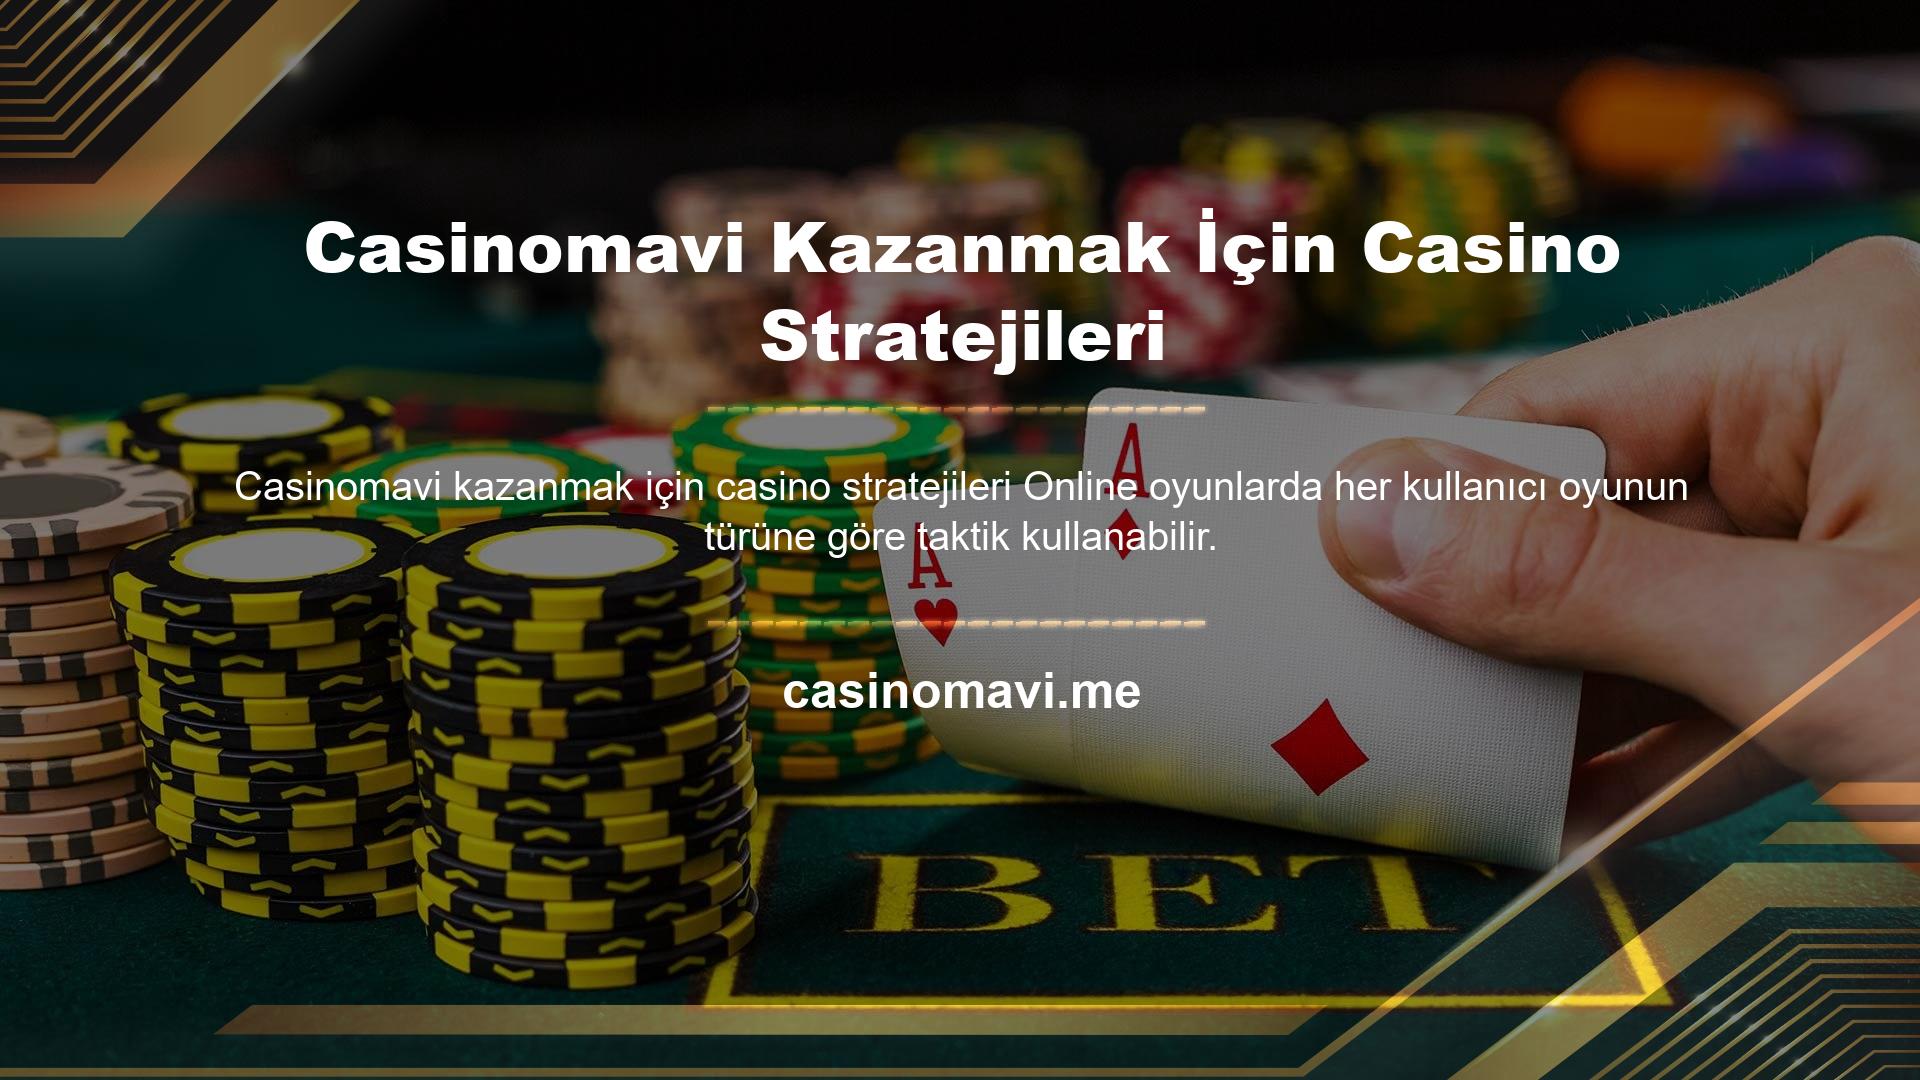 Casinomavi sitesinde oynanan oyunlarda kullanılan stratejiler casino oyunlarında kazanmayı garanti eder